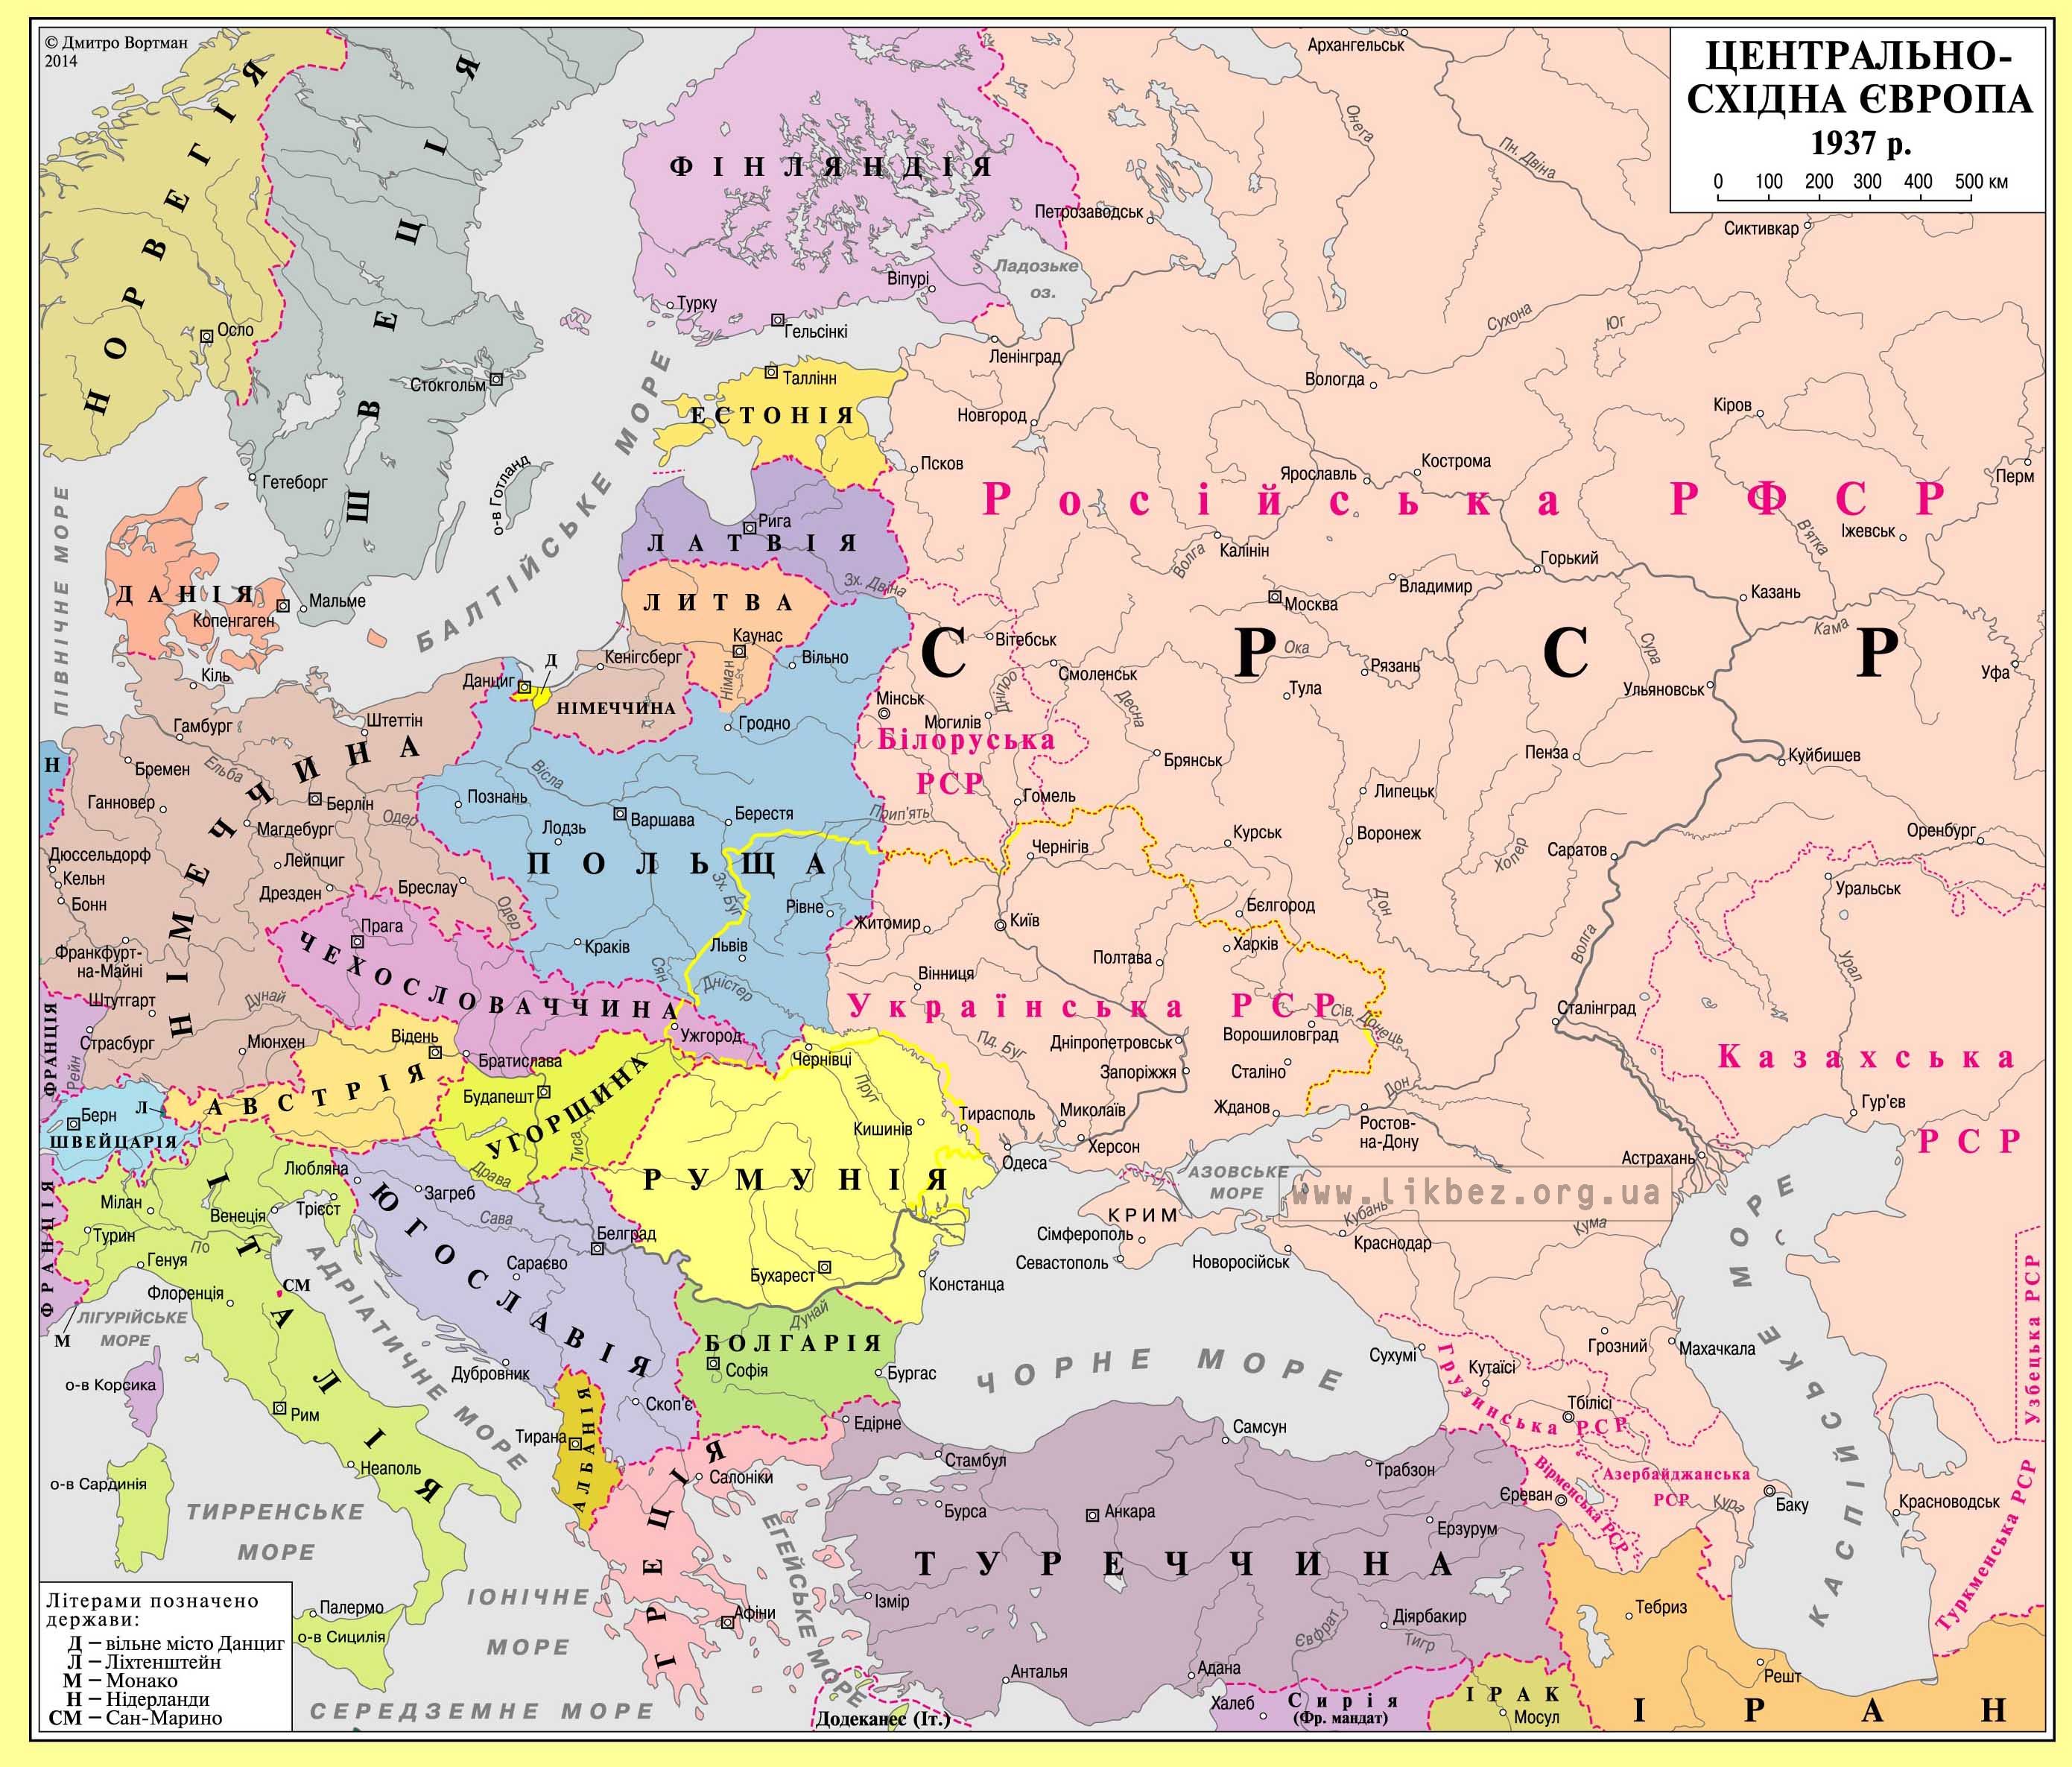 Карта Центрально-Східної Європи на 1937 рік — Ликбез